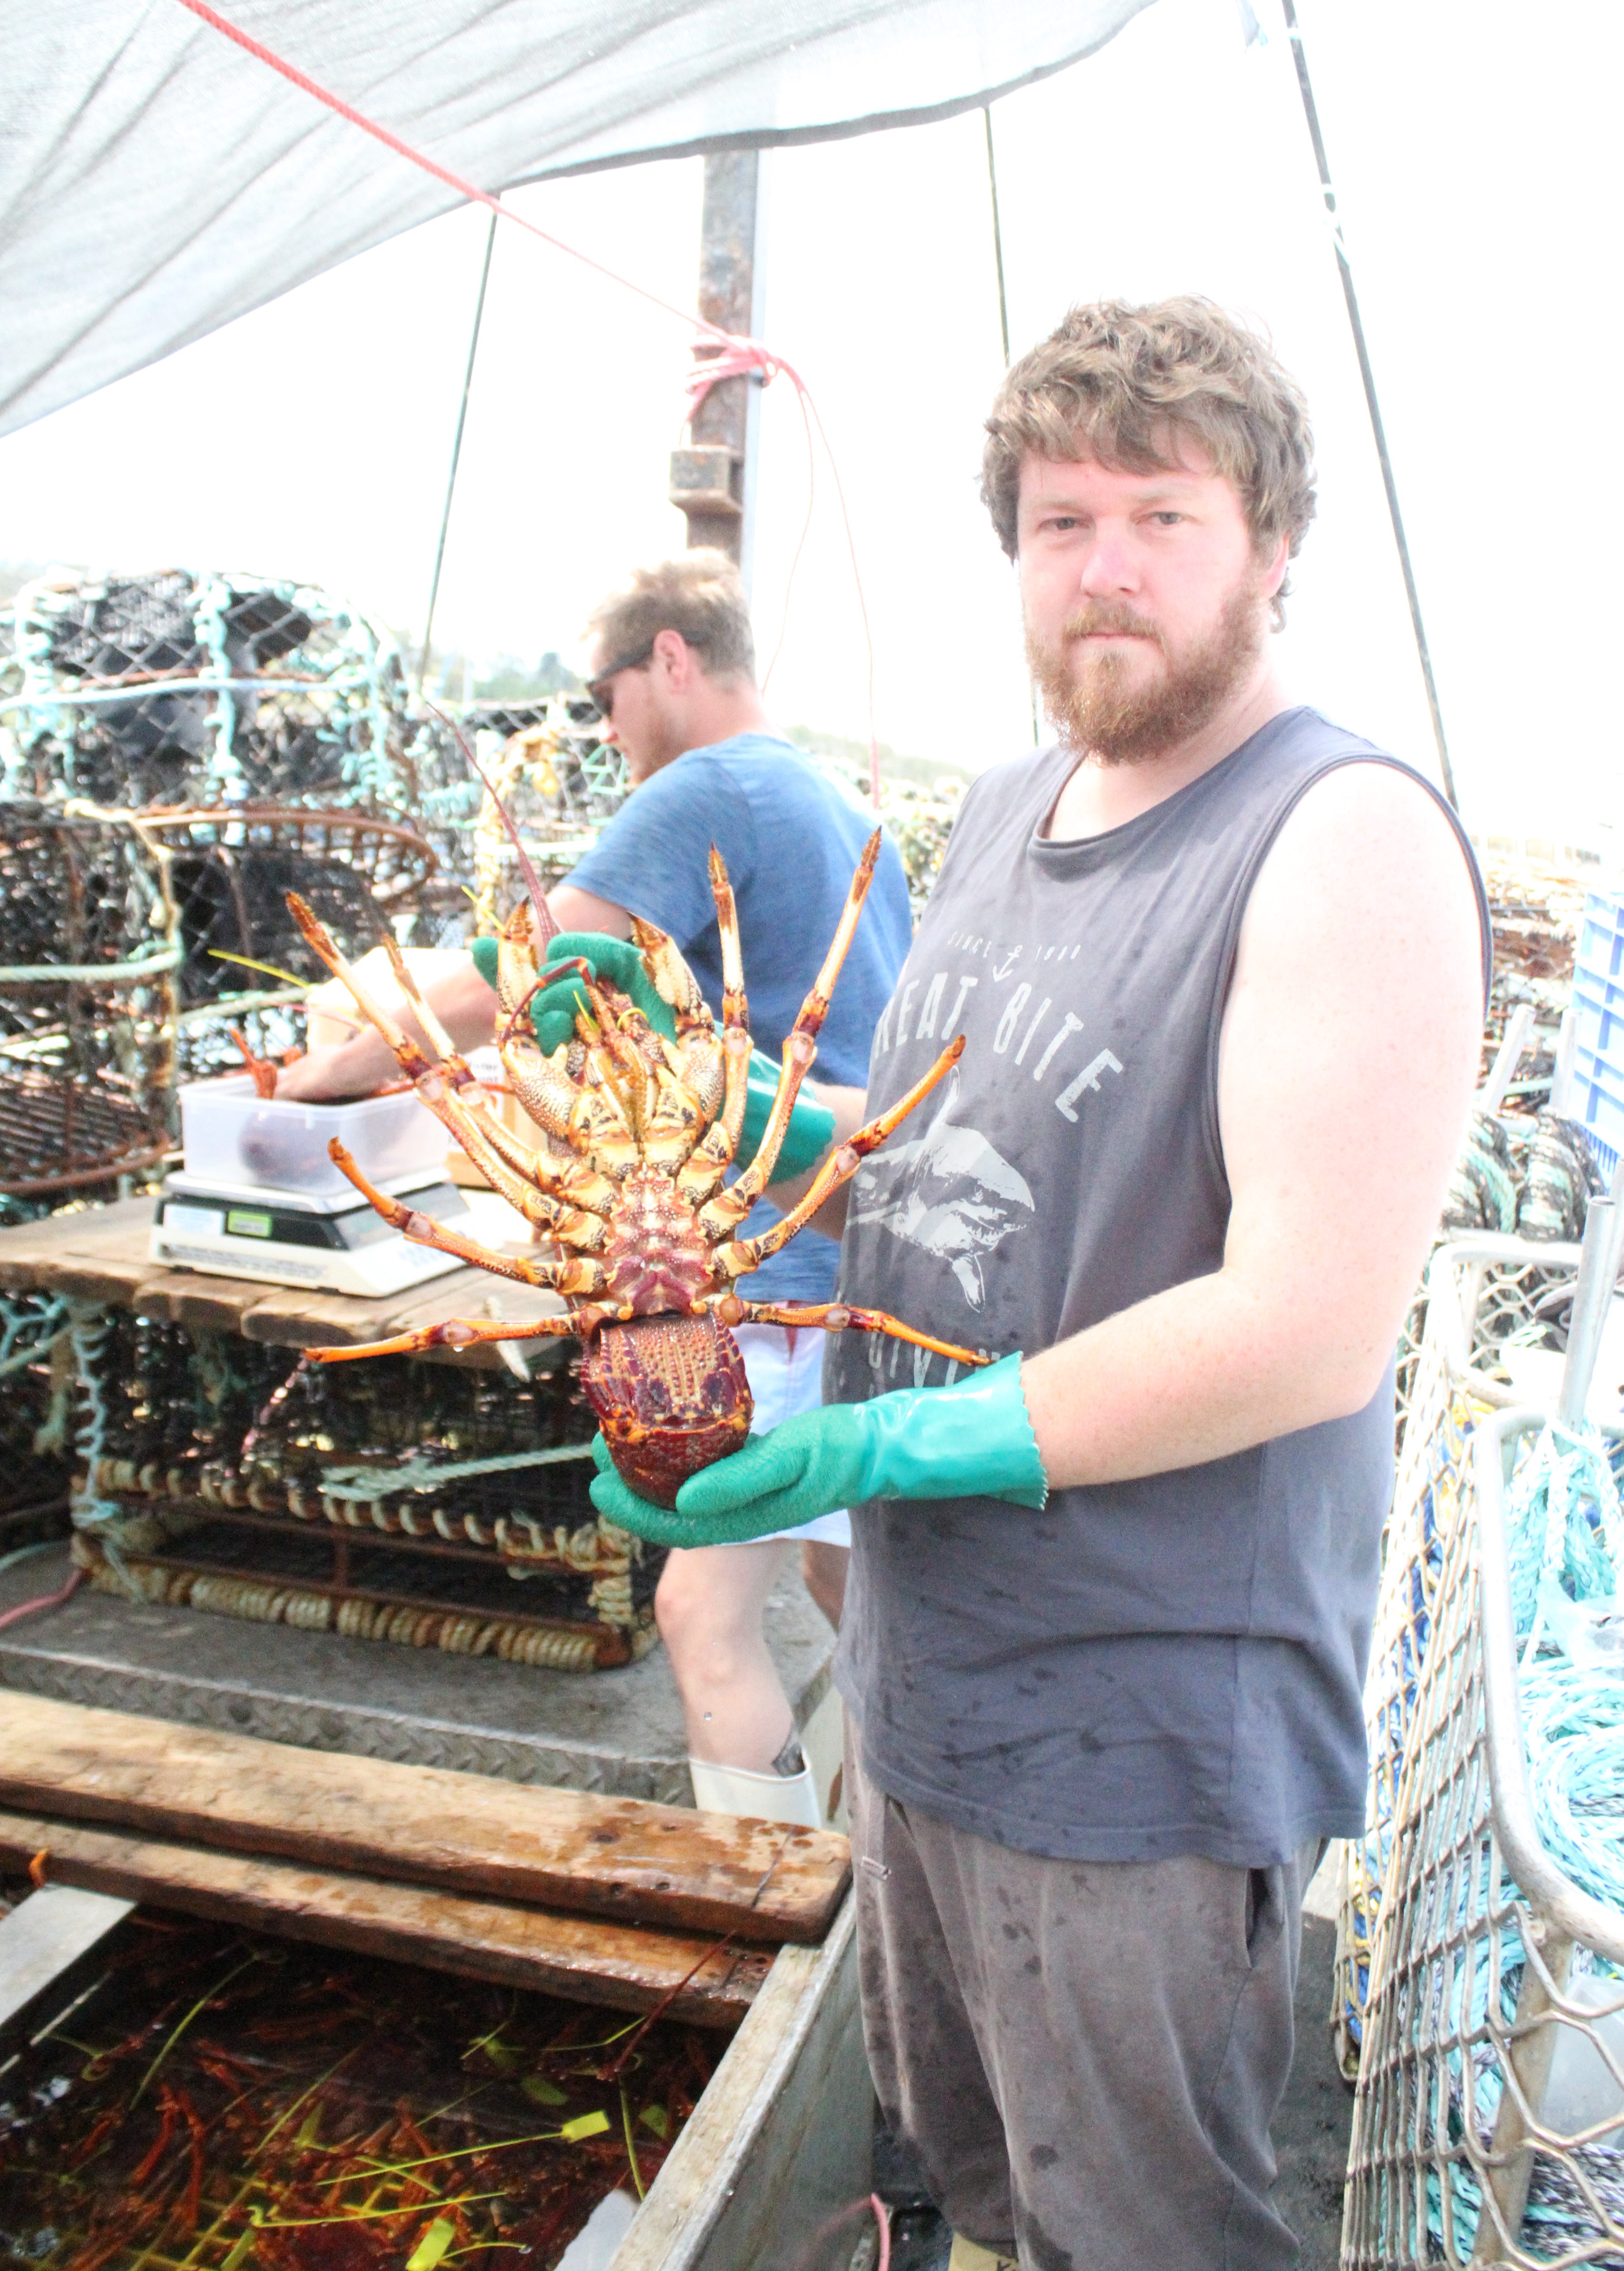 Rock lobster industry in limbo